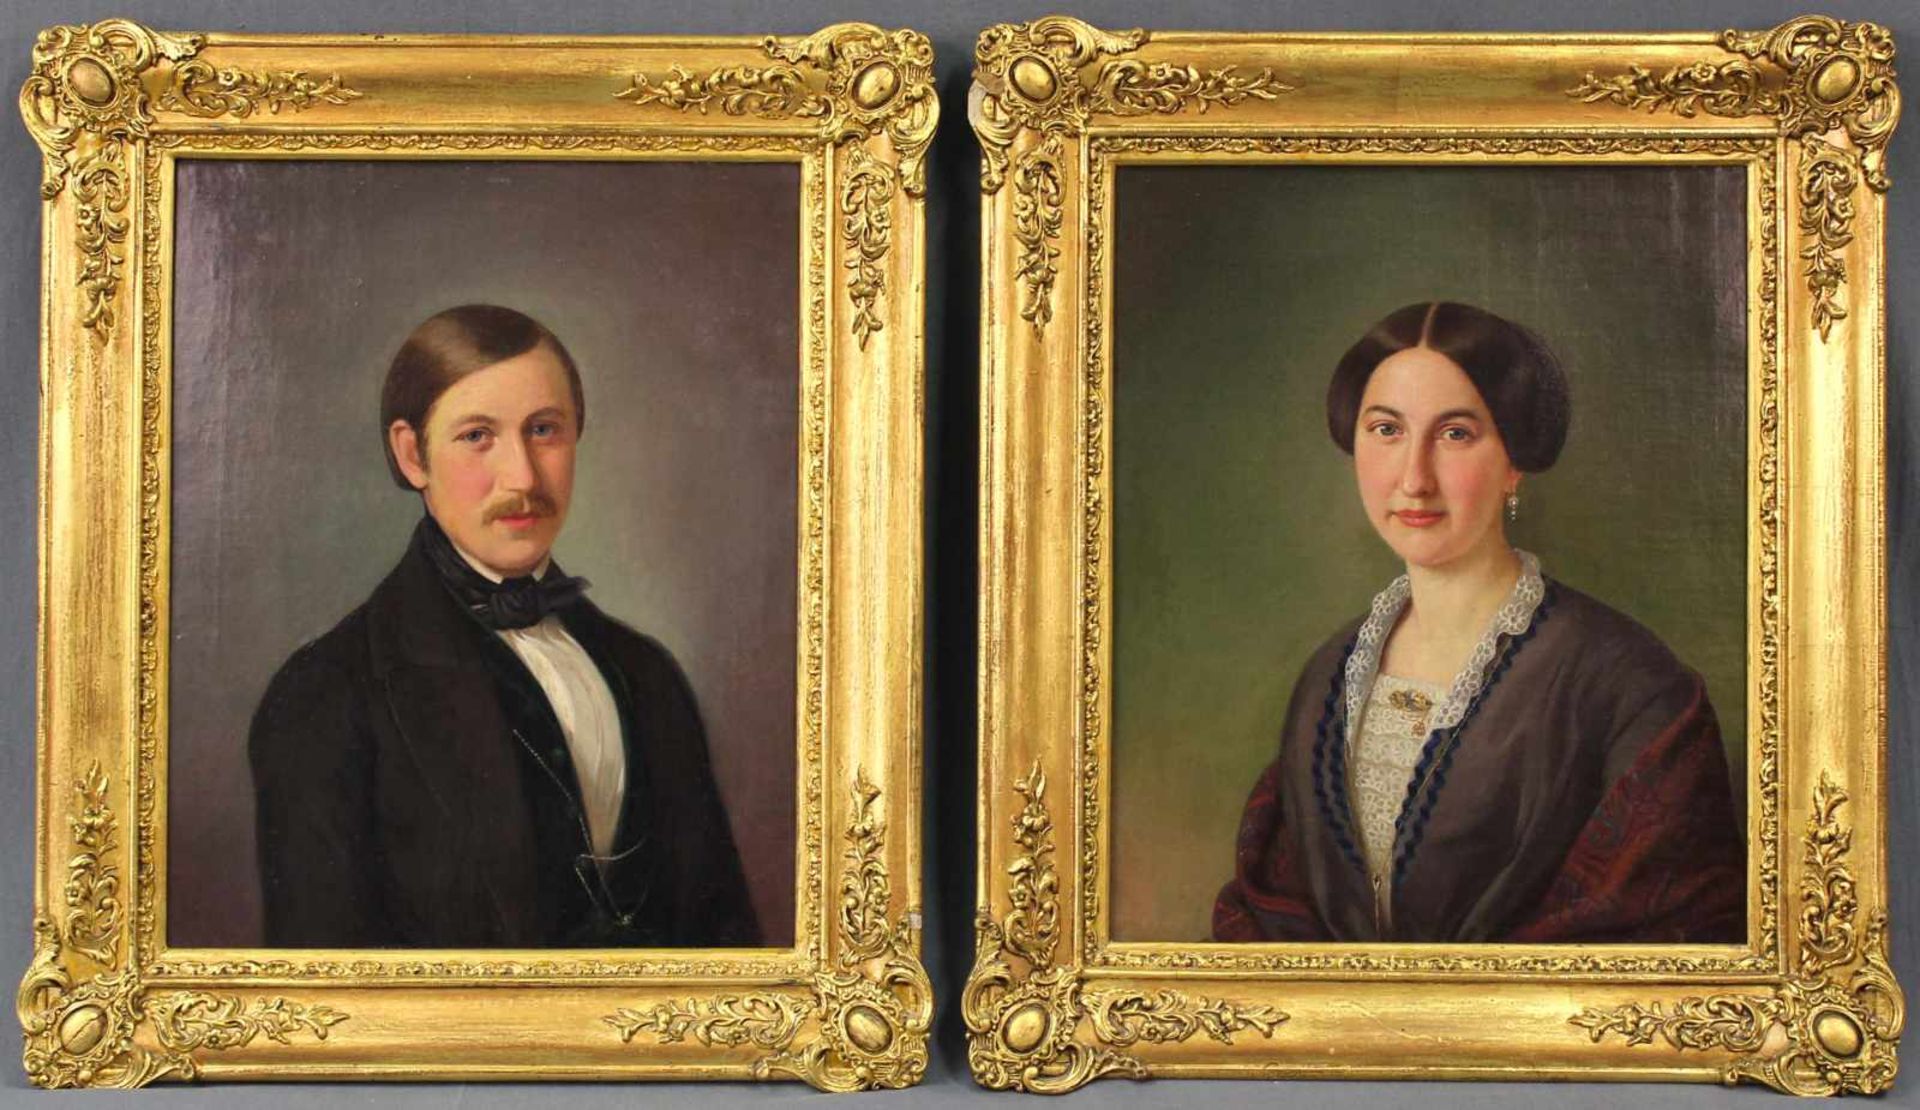 UNSIGNIERT (XIX). Zwei Biedermeier Portraits. Ein Paar. 42 cm x 33 cm. Gemälde, Öl auf Leinwand.